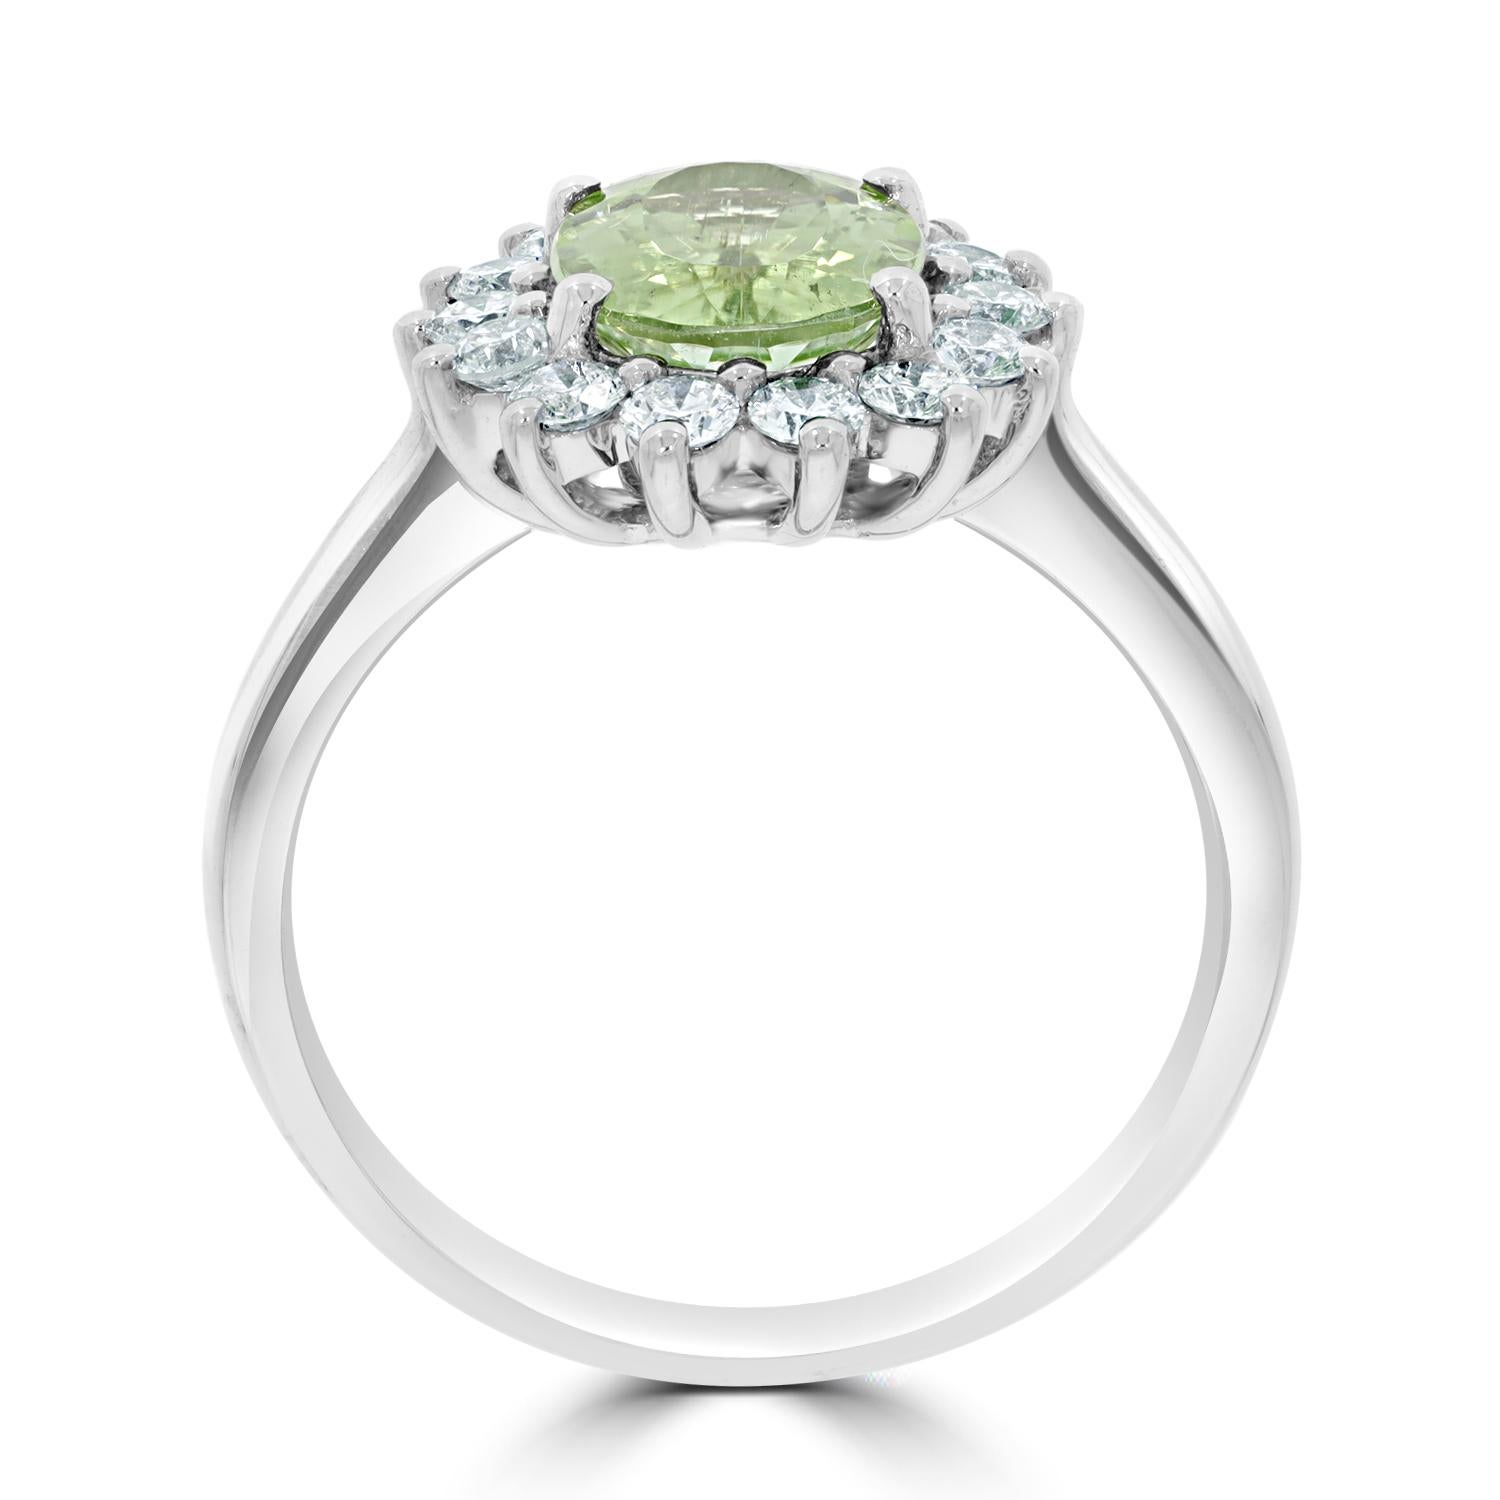 Unser atemberaubender nigerianischer grüner Paraiba-Turmalin-Ring ist ein wahres Meisterwerk, das die Blicke auf sich zieht und die Aufmerksamkeit auf sich zieht. Dieser exquisite Ring enthält einen 1,76-karätigen nigerianischen grünen